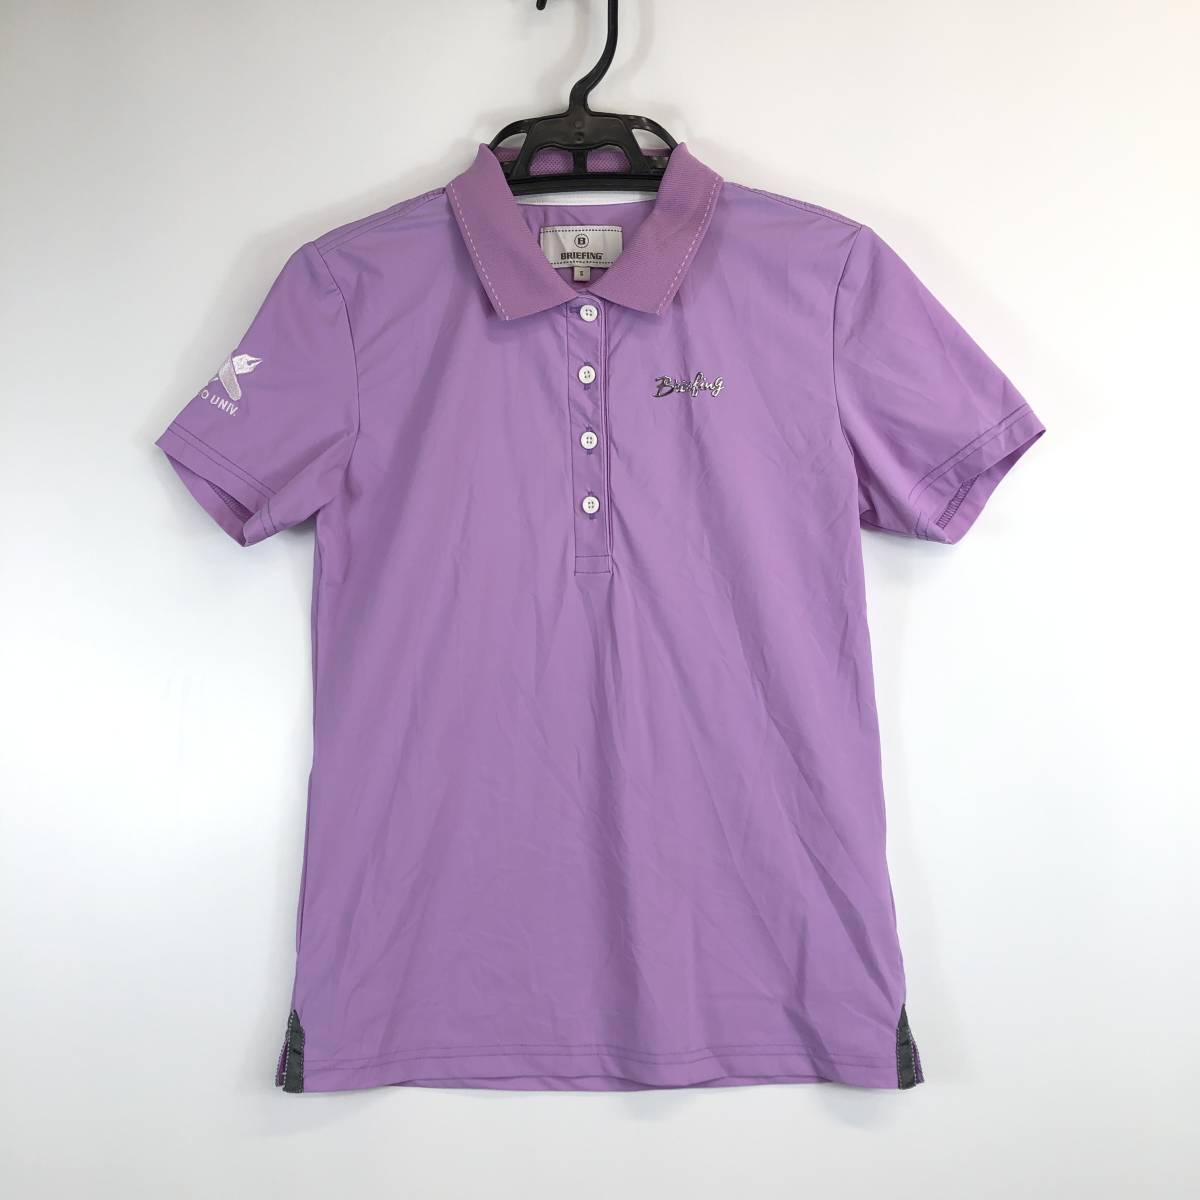 ブリーフィング BRIEFING ゴルフポロシャツ 半袖 薄紫 Sサイズ 慶應大学ゴルフ部 BGW213W02